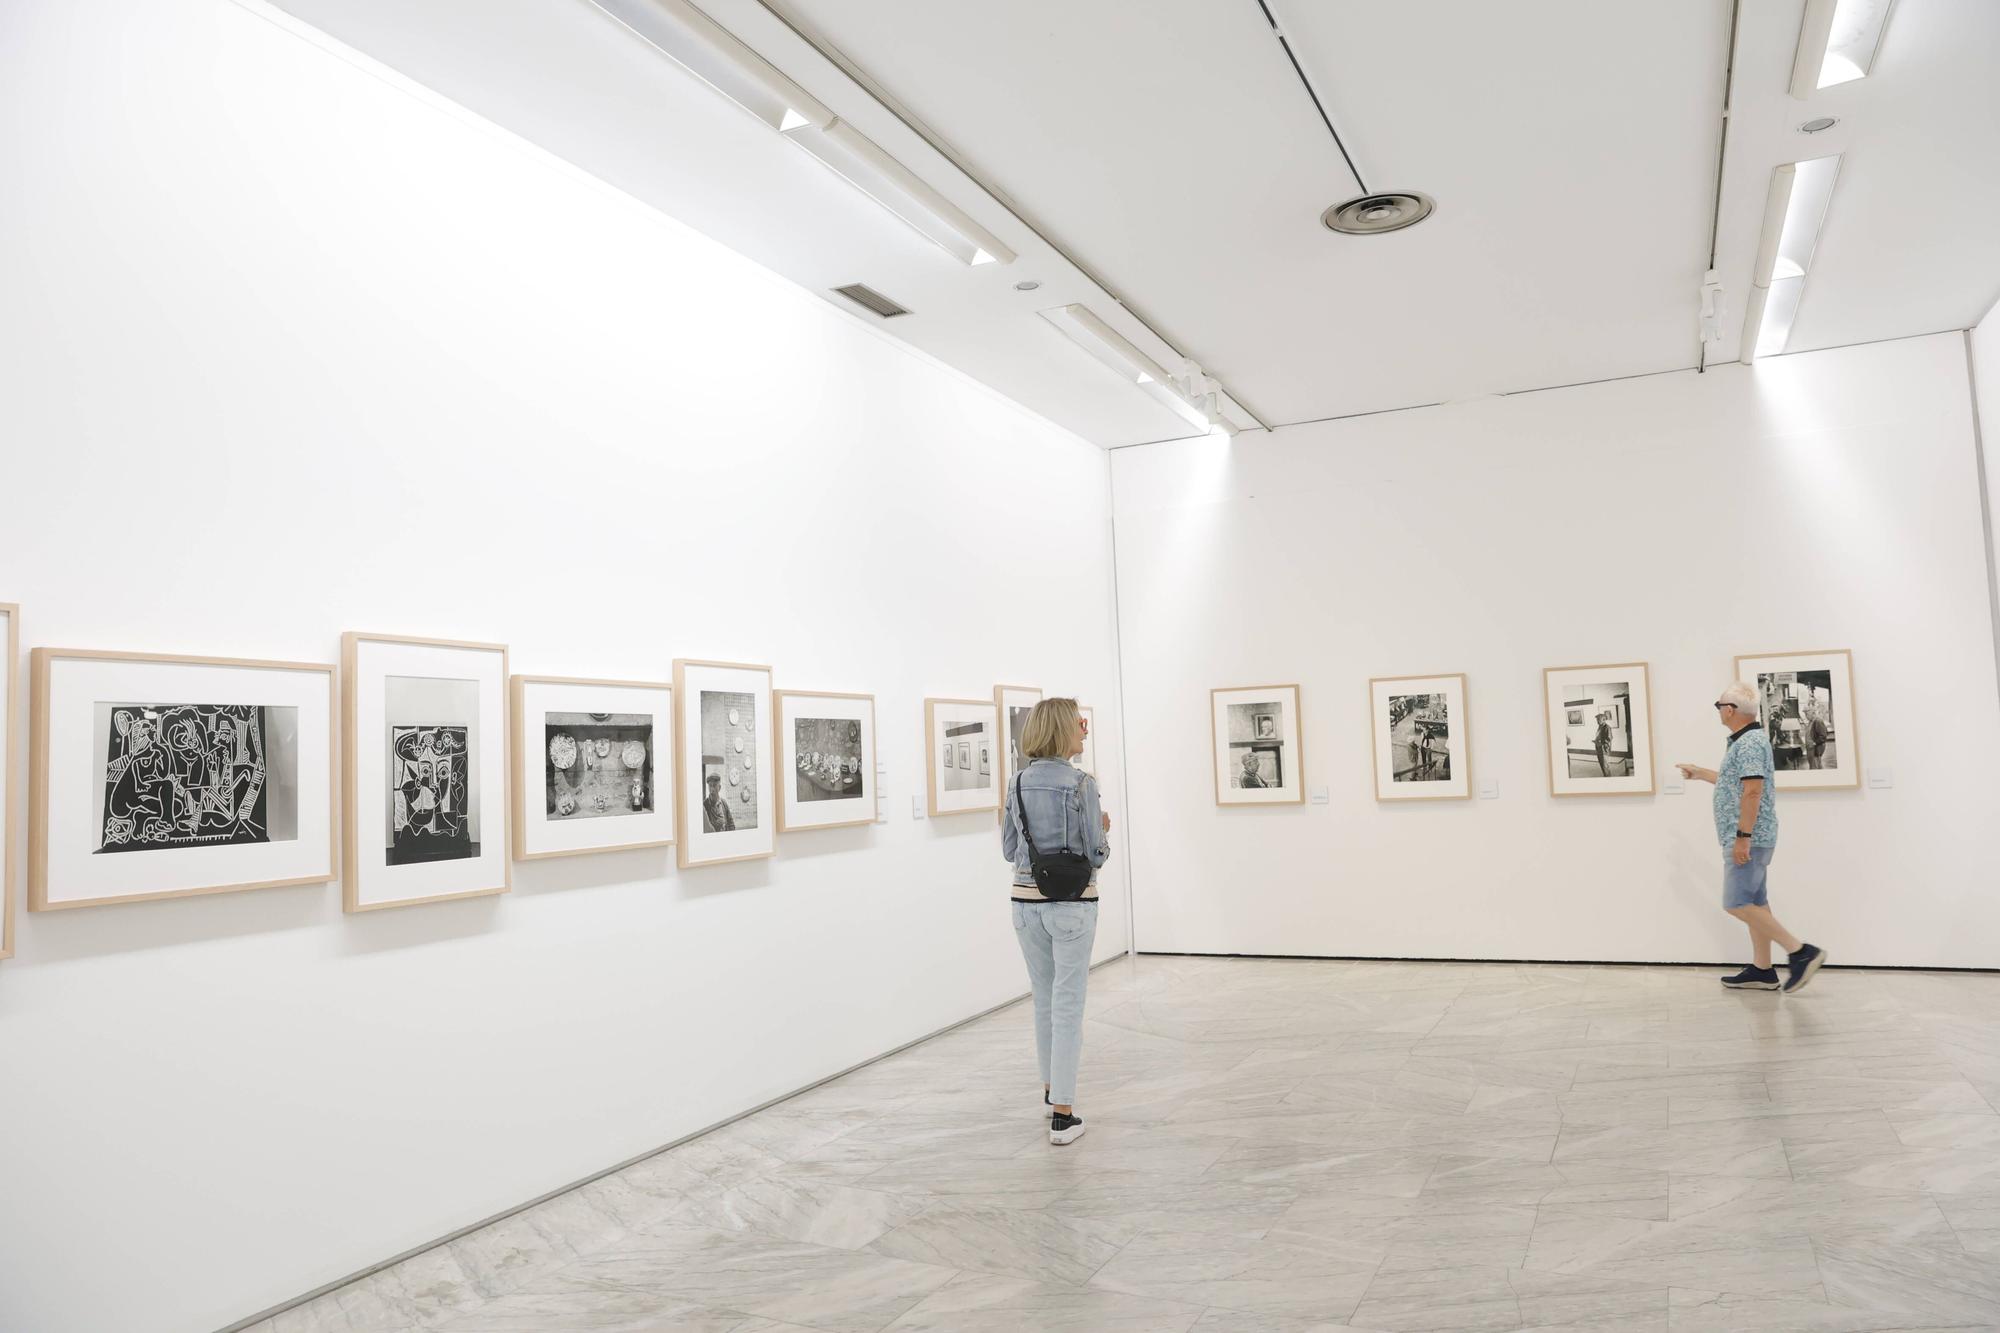 El Museo de Bellas Artes muestra una gran colección fotográfica de Picasso, obra documental de Antonio Cores